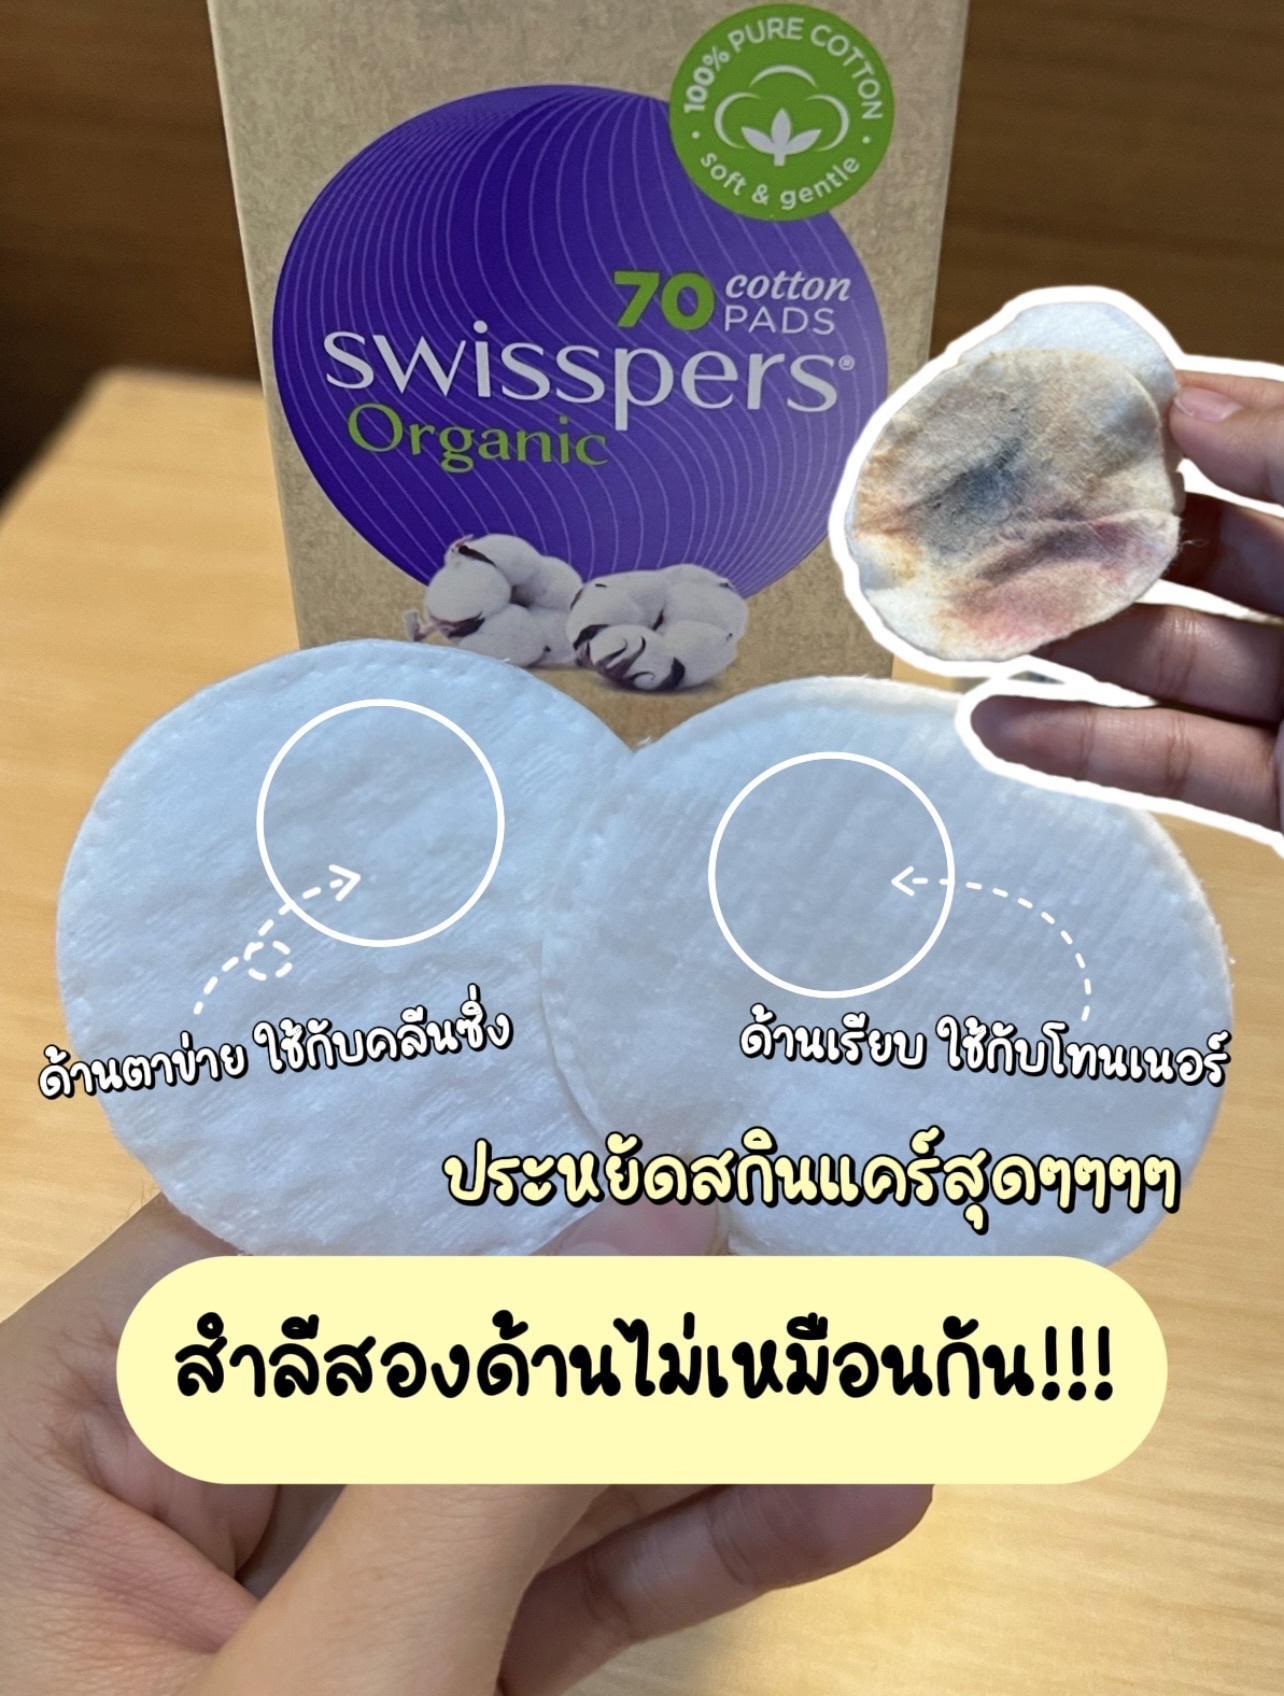 ภาพหน้าปก ป้ายยาสำลีที่จริงใจ Swisspers Organic Cotton Pads!!! ที่:1